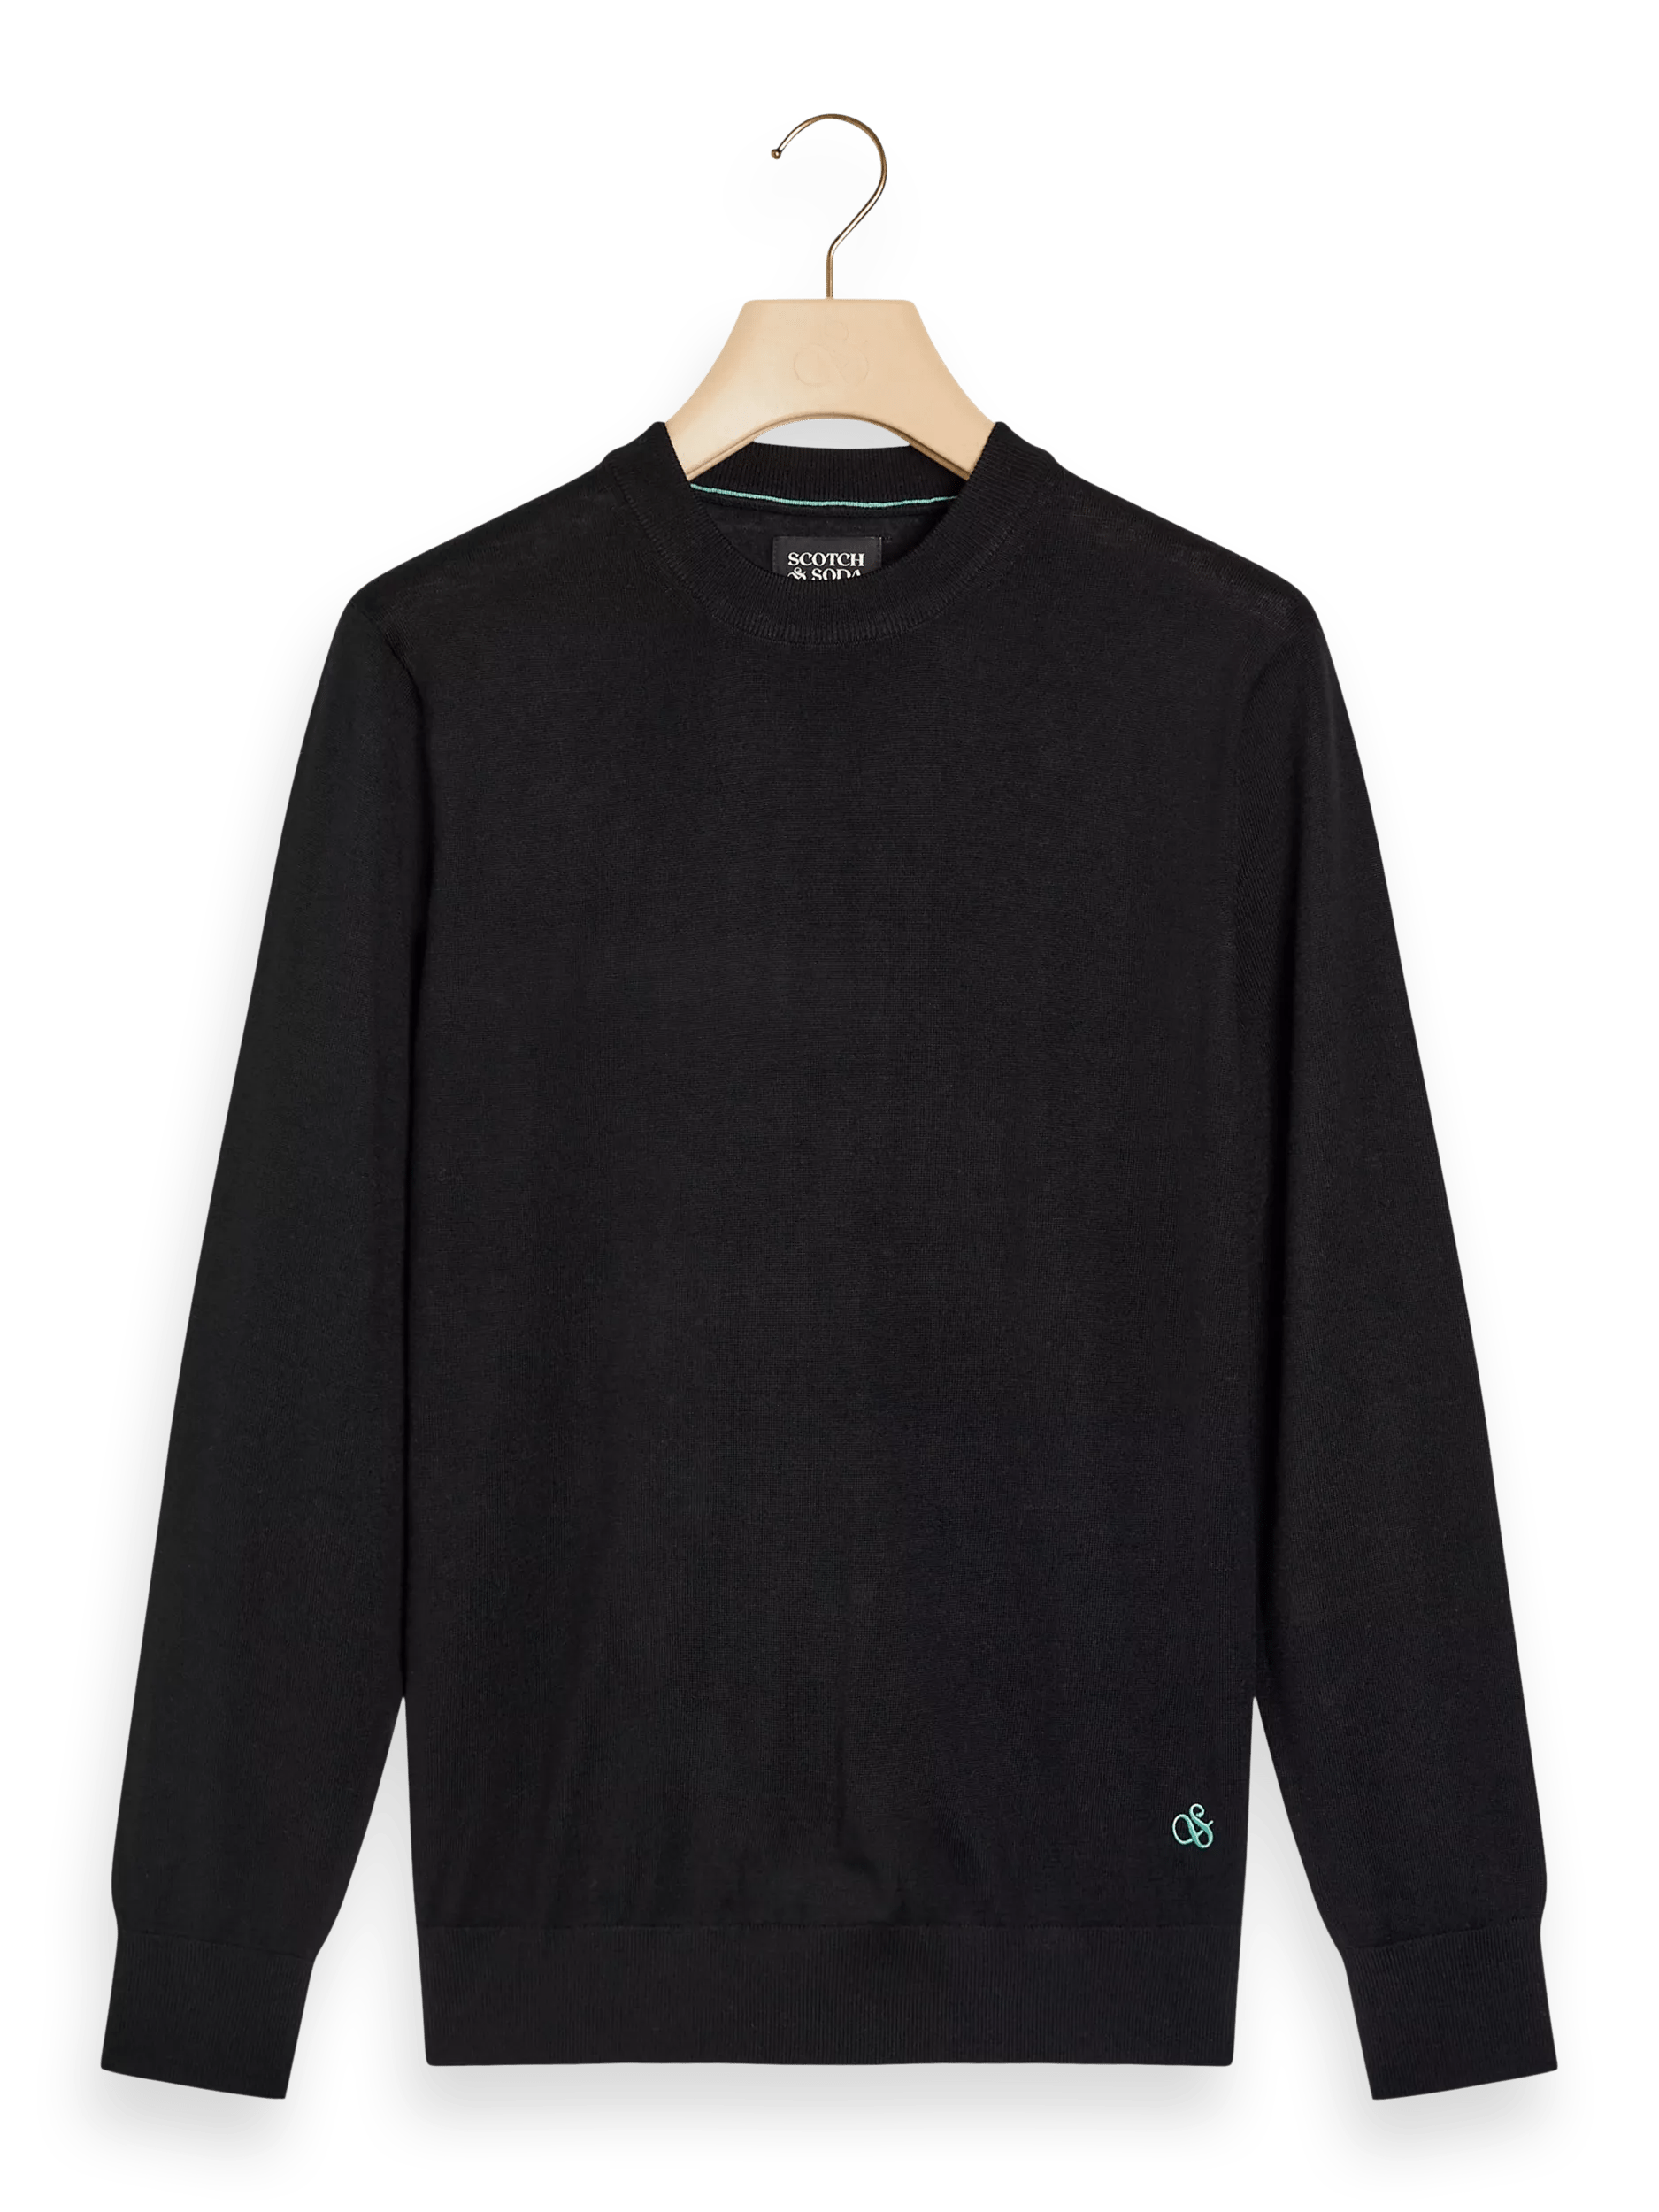 Merino wool sweater